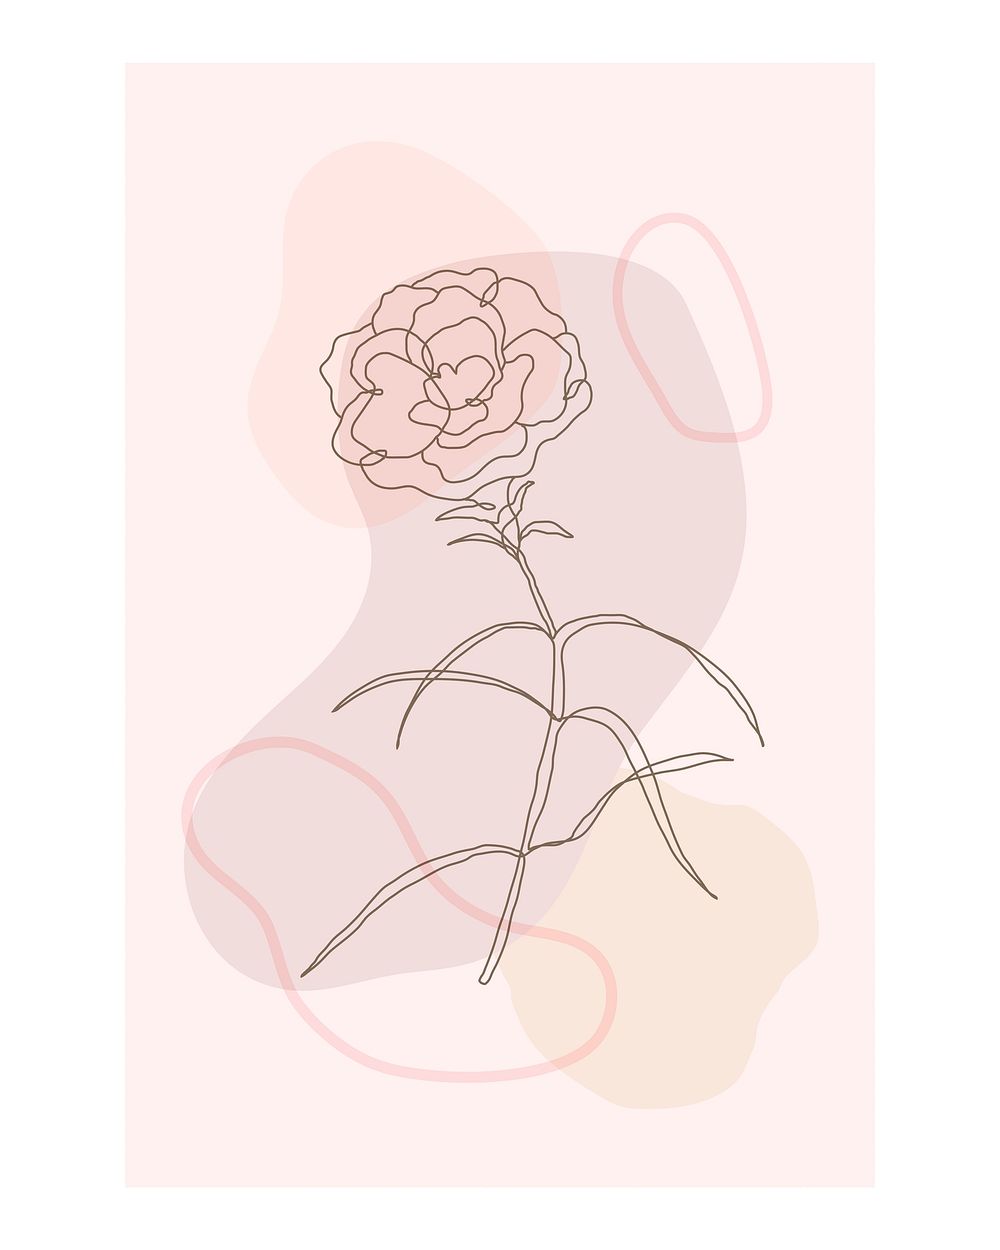 Feminine flower poster, line art design 